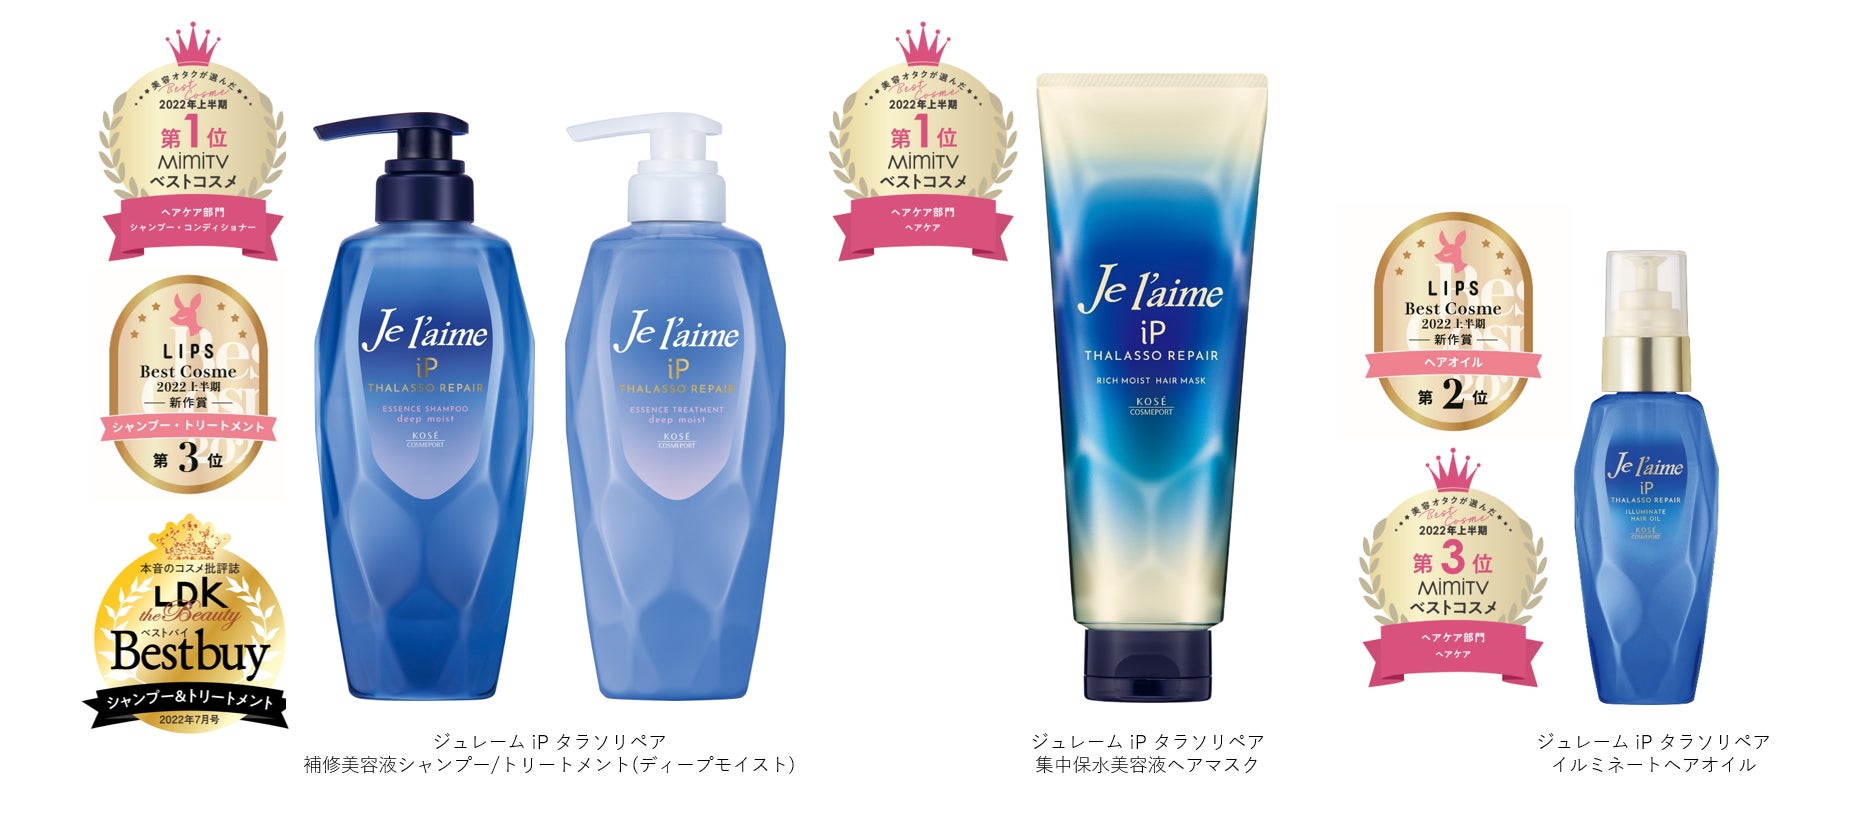 2022年3月発売の補修美容液シャンプー「ジュレームiP」シリーズがベストコスメを多数受賞！